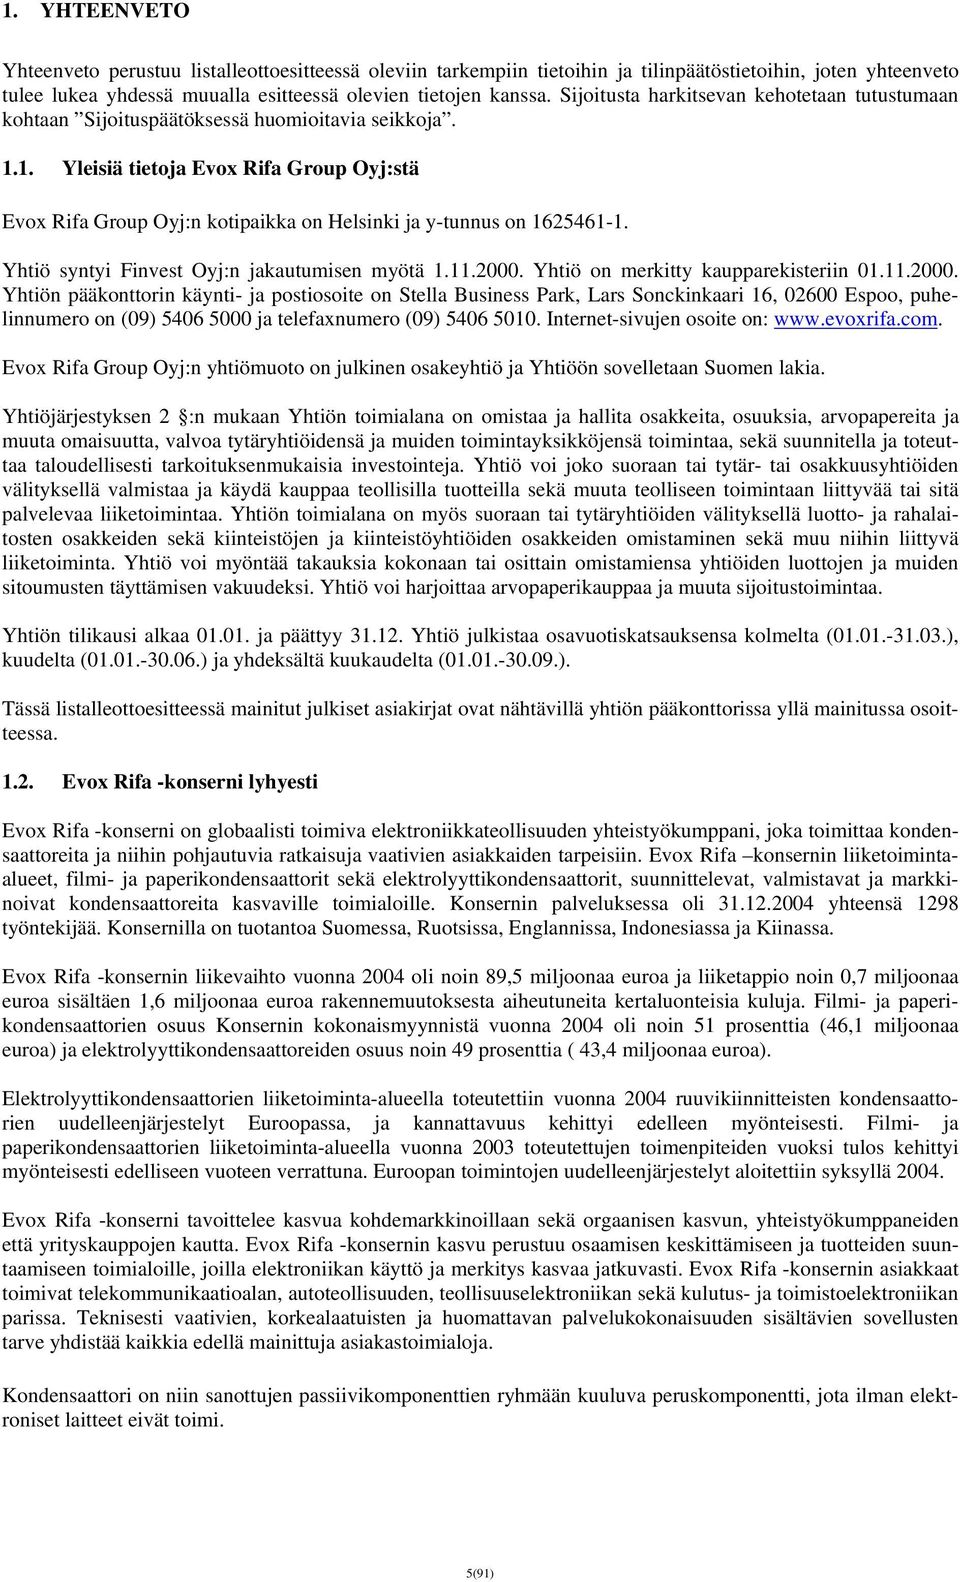 1. Yleisiä tietoja Evox Rifa Group Oyj:stä Evox Rifa Group Oyj:n kotipaikka on Helsinki ja y-tunnus on 1625461-1. Yhtiö syntyi Finvest Oyj:n jakautumisen myötä 1.11.2000.